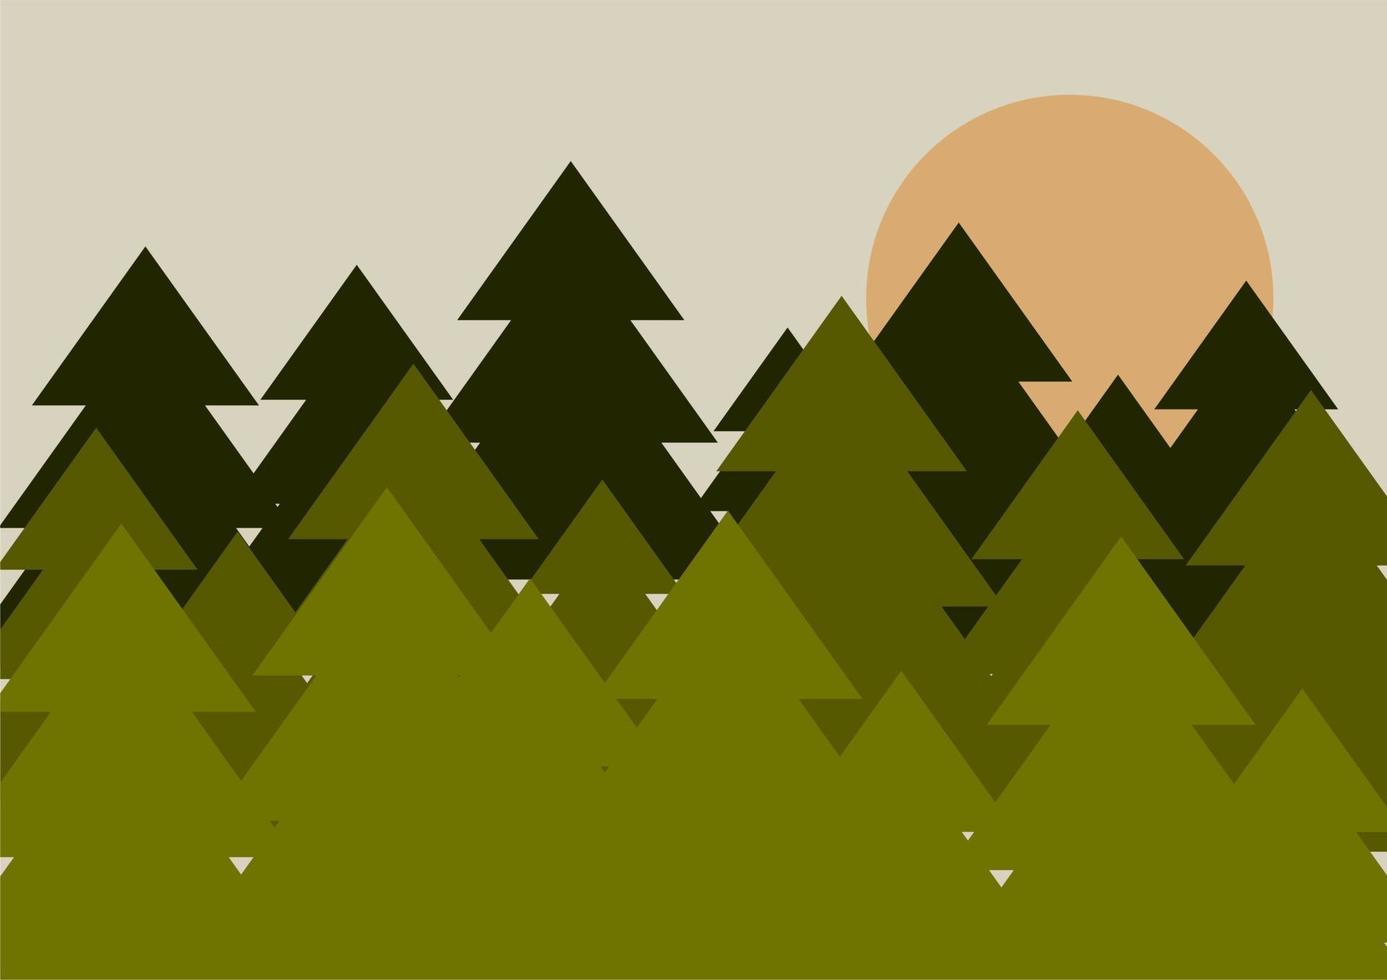 plano bosque y Dom. fondo, fondo o bandera, tarjeta postal, póster. resumen sencillo naturaleza. verde arboles vector